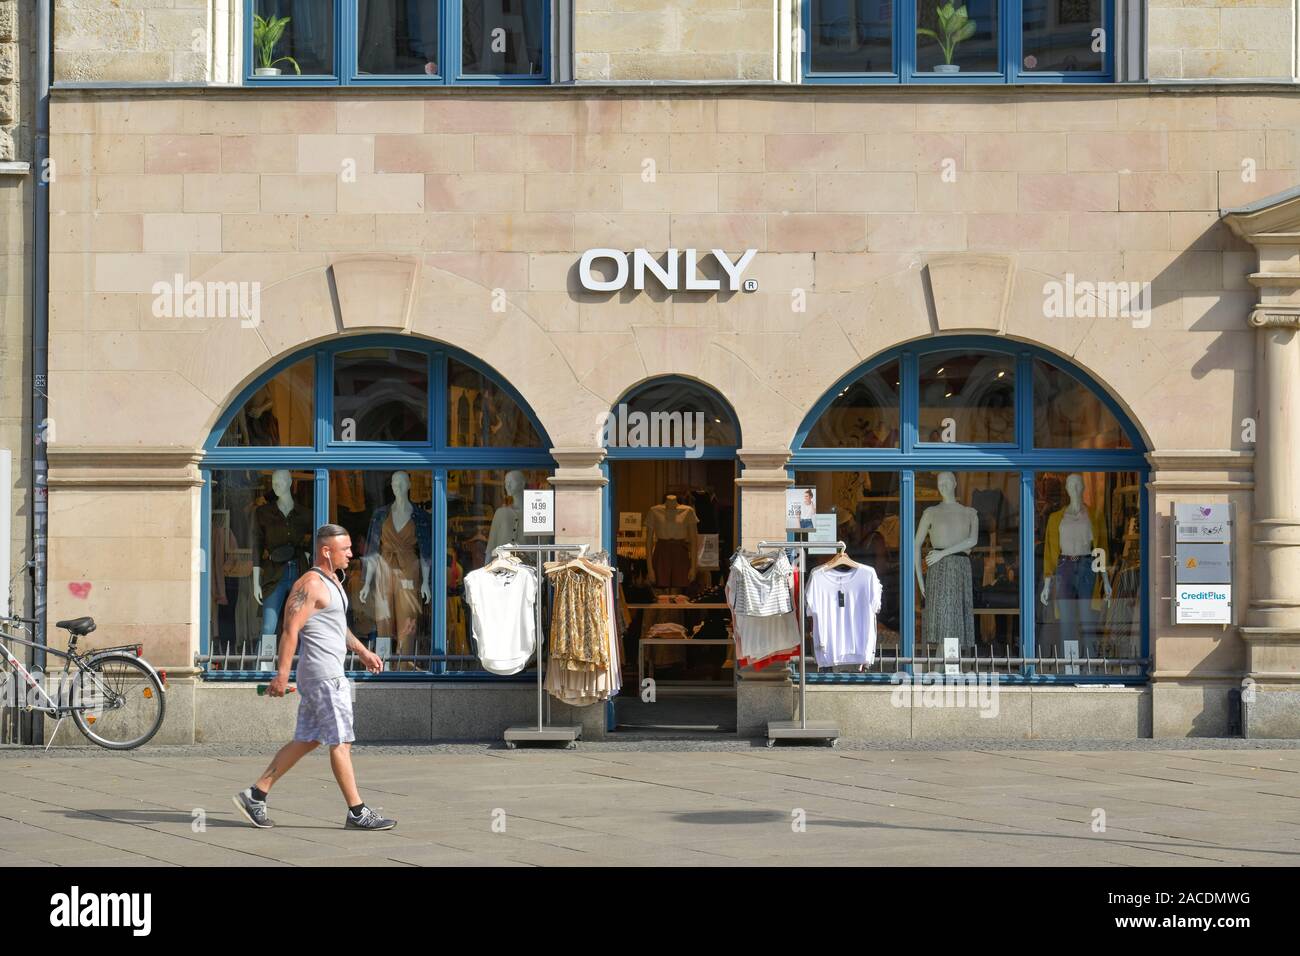 Kleidungsgeschäft Only, Anger, Erfurt, Thüringen, Deutschland Stock Photo